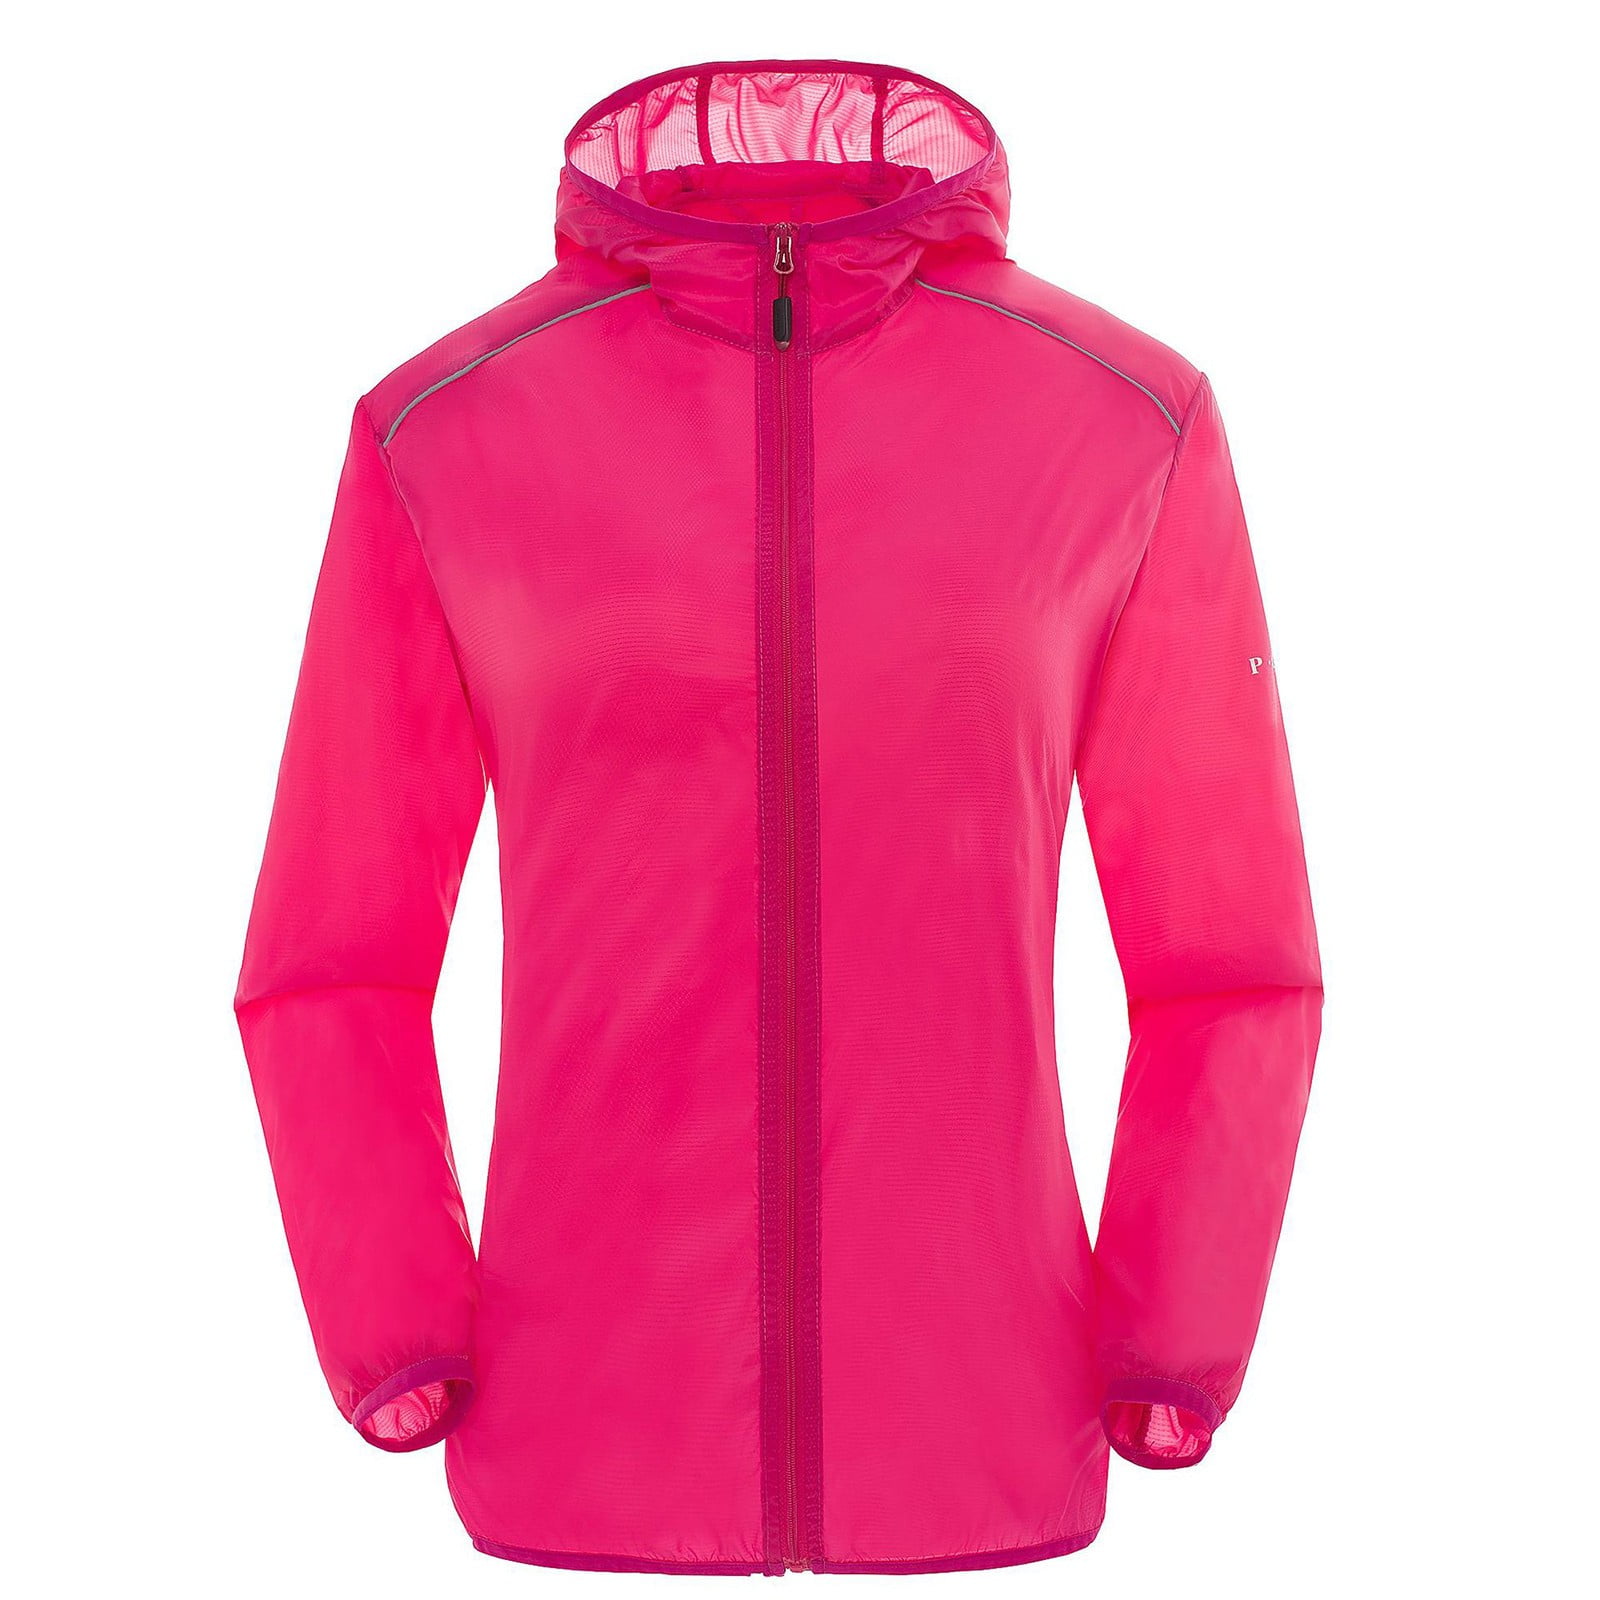 Dyfzdhu Women Solid Rain Jacket Outdoor Plus Size Hooded Waterproof ...